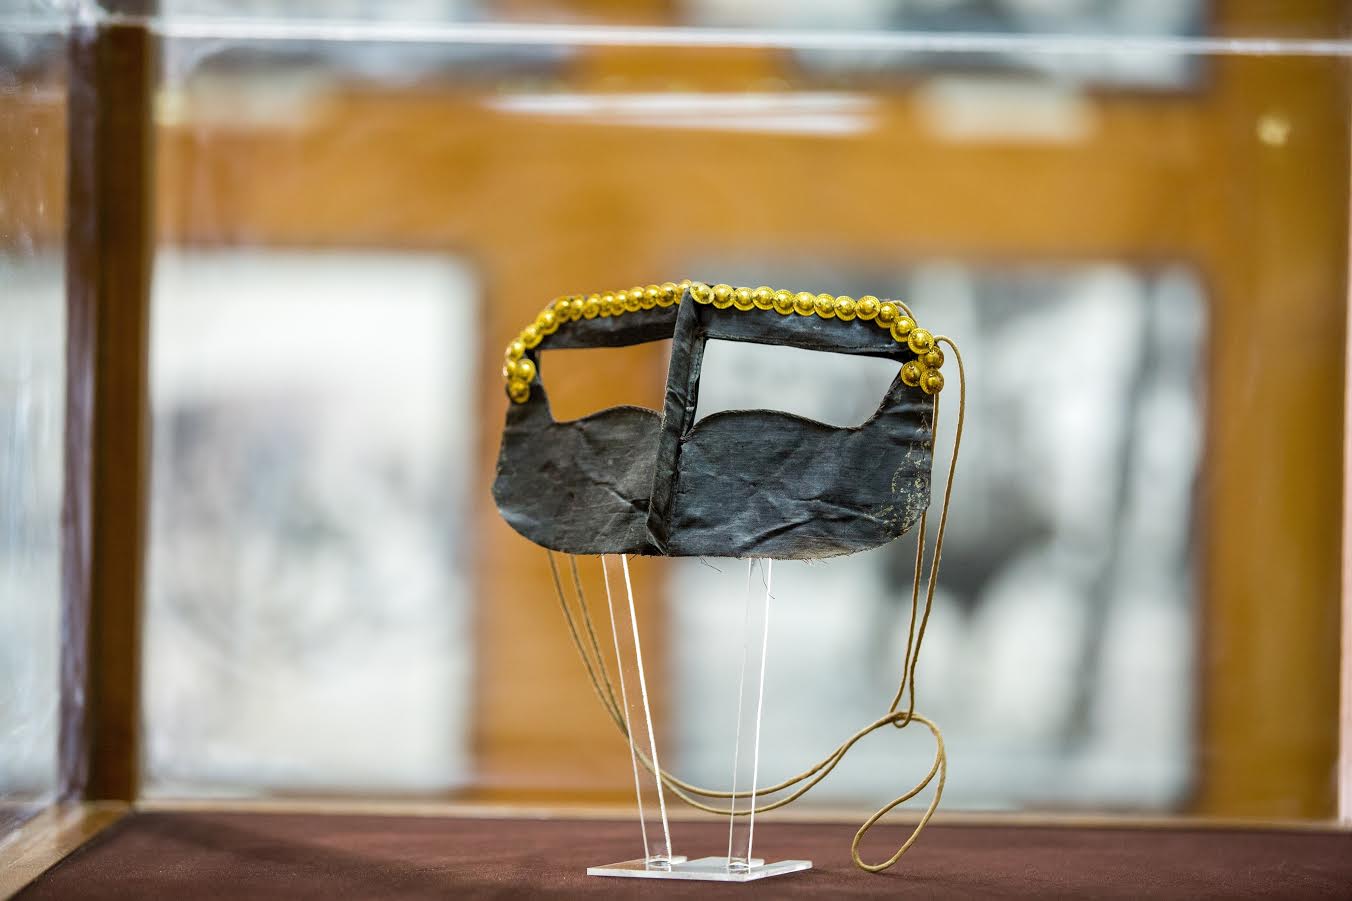 متحف العين الوطني يسلط الضوء على قطعة برقع بونيوم - عين ...